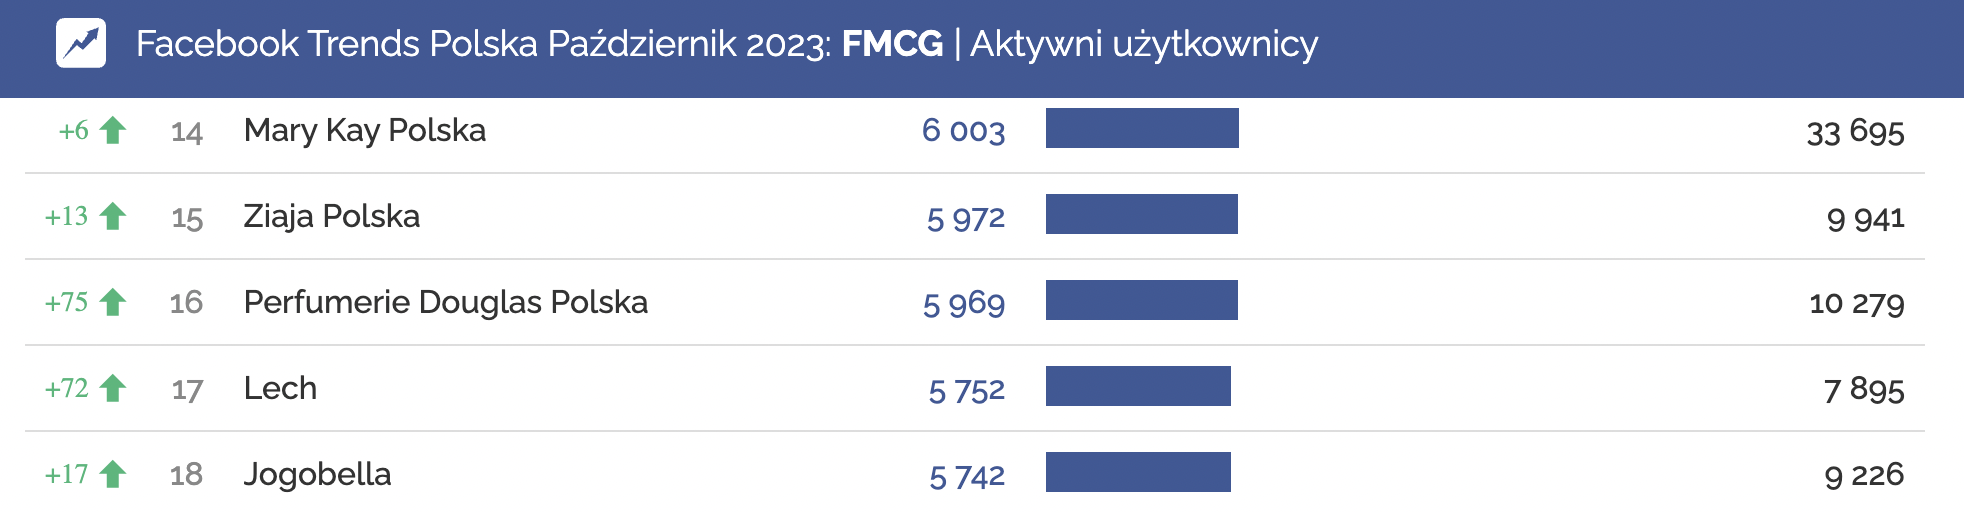 fmcg aktywni uzytkownicy 10.2023 facebook